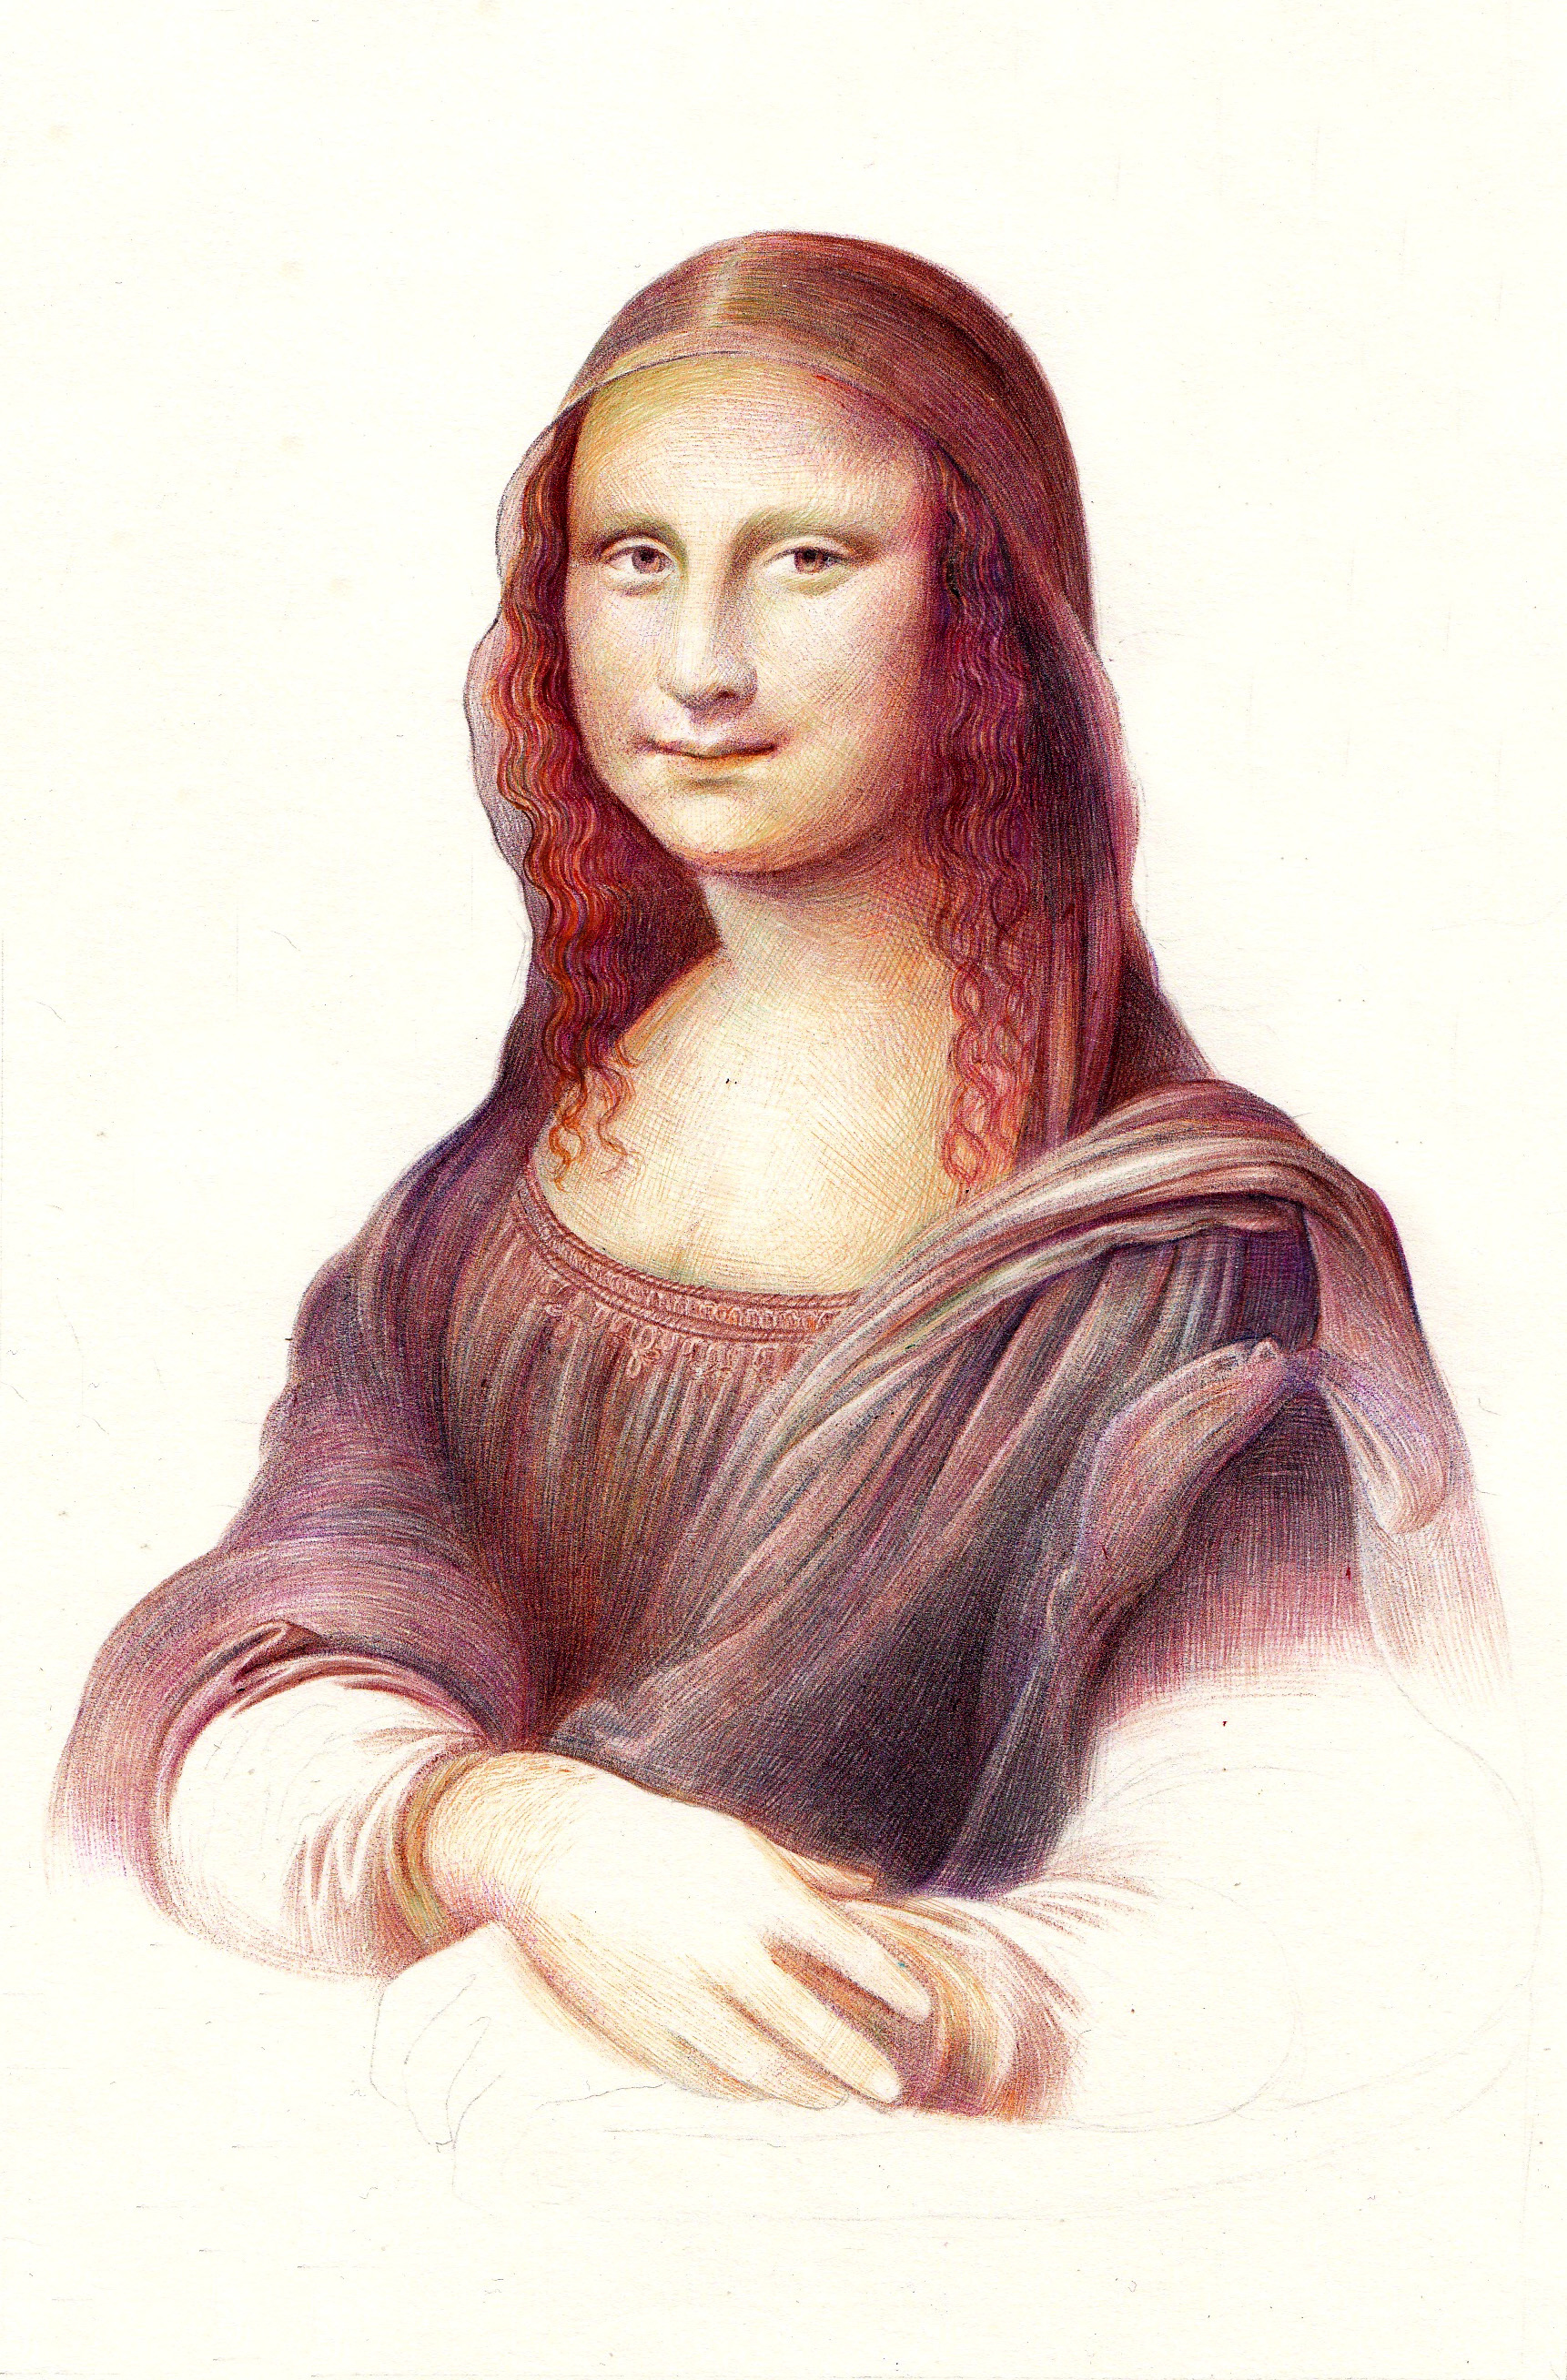 Mona Lisa Frame Louvre